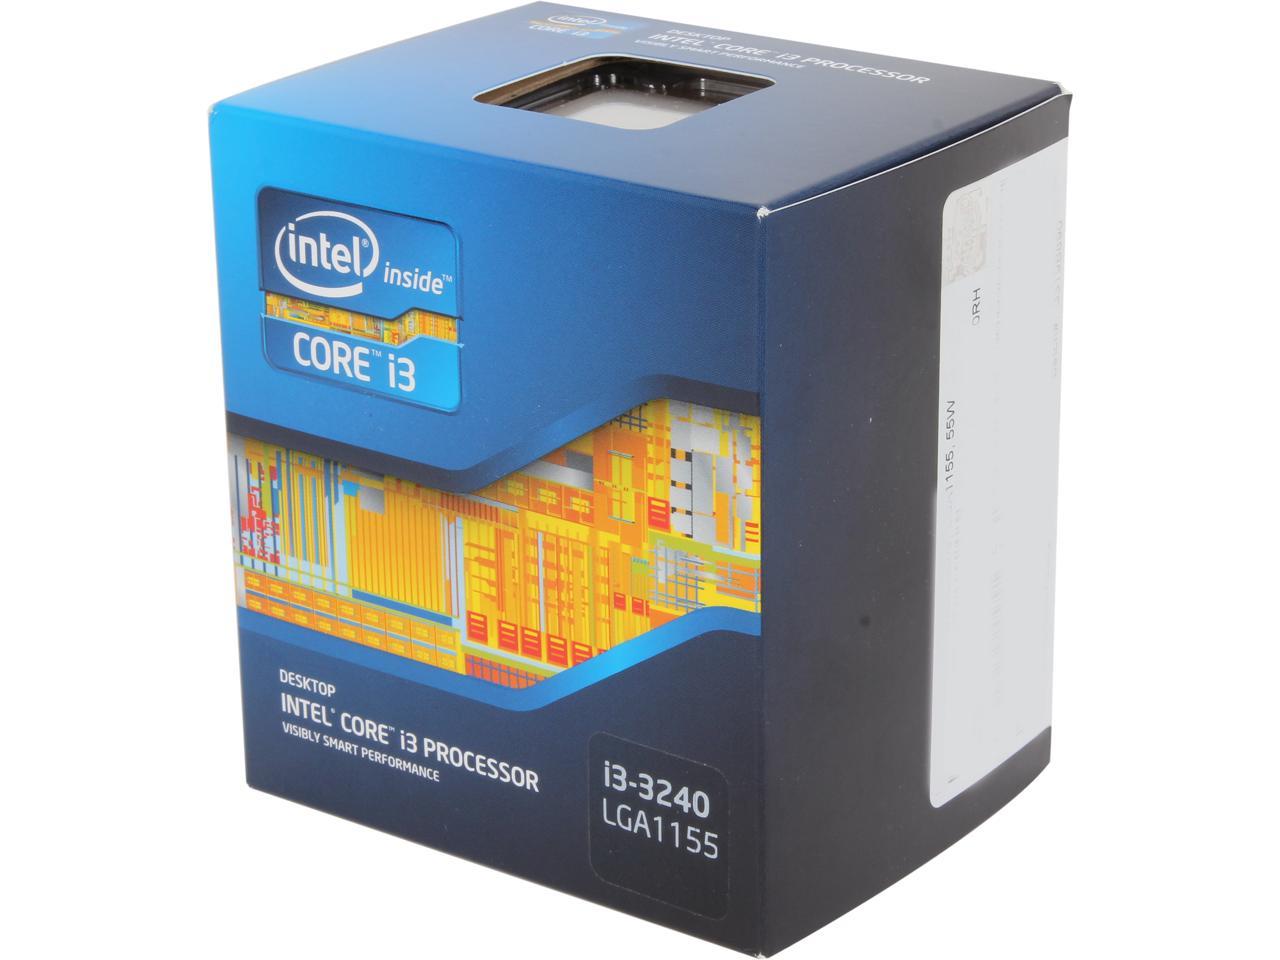 Intel Core I3 3240 Core I3 3rd Gen Ivy Bridge Dual Core 3 4 Ghz Lga 1155 55w Intel Hd Graphics 2500 Desktop Processor Newegg Com